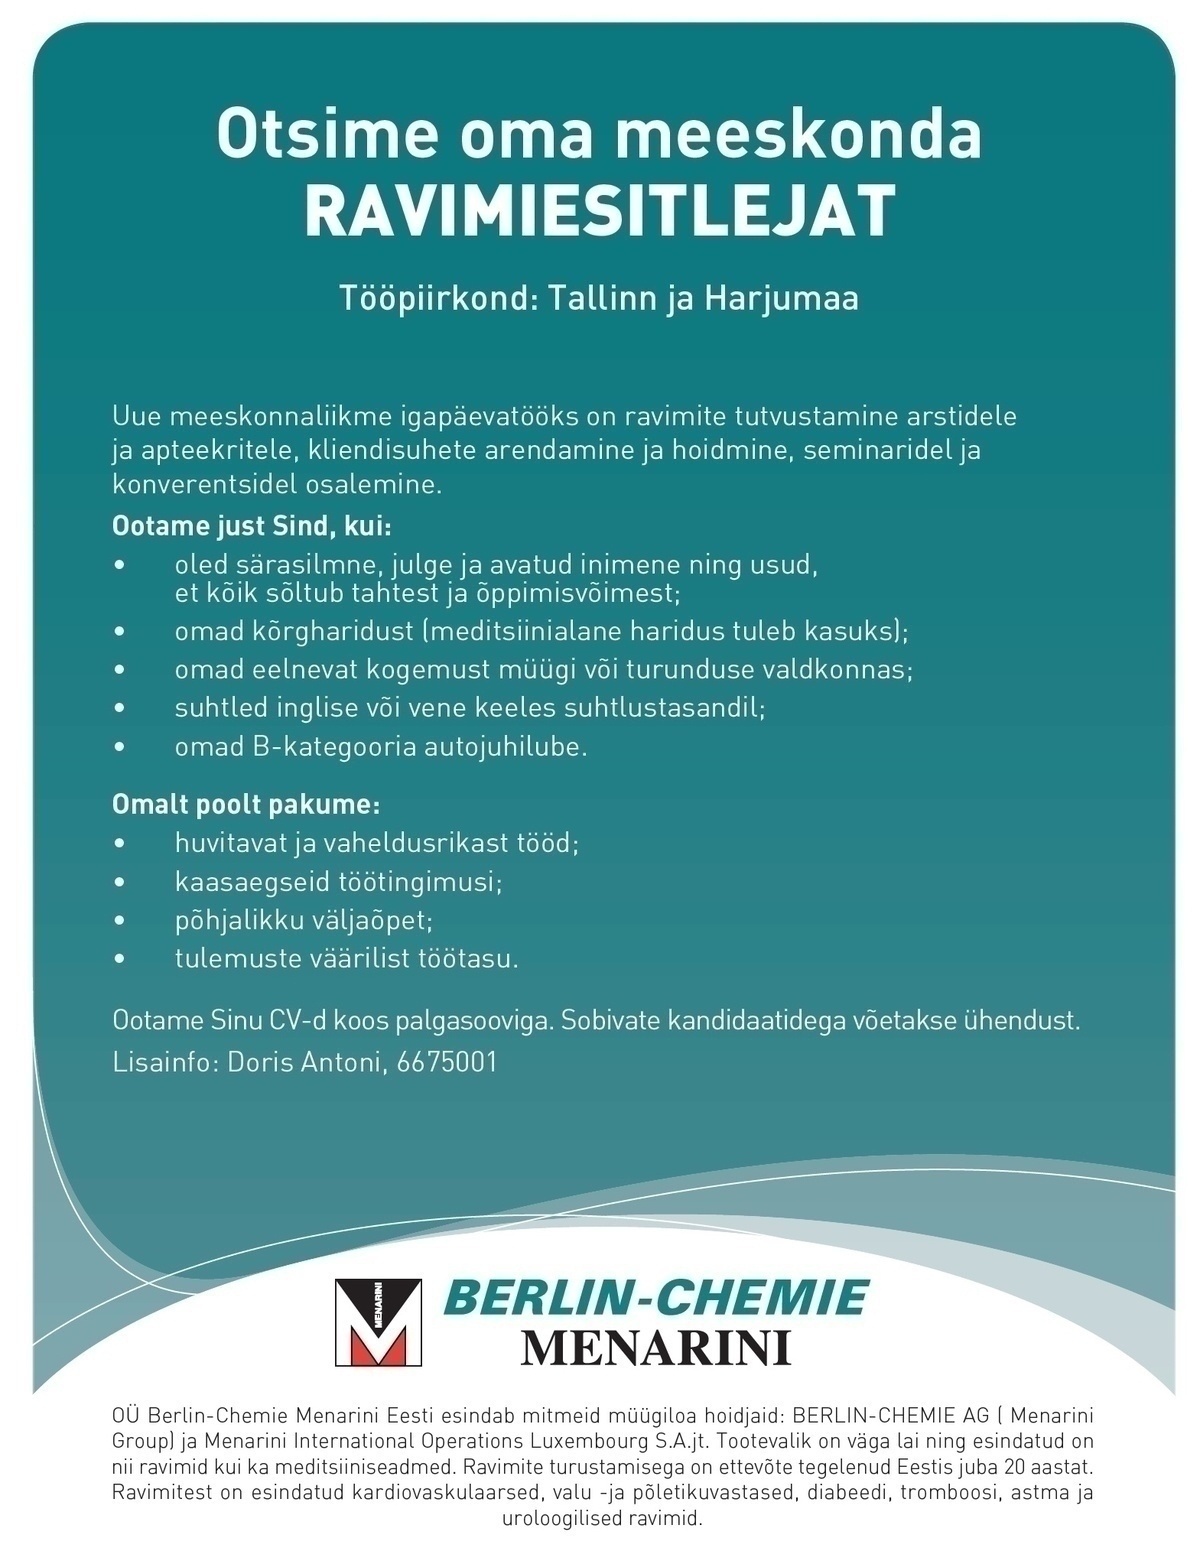 Berlin-Chemie Menarini Eesti OÜ Ravimiesitleja (Tallinn / Harjumaa)